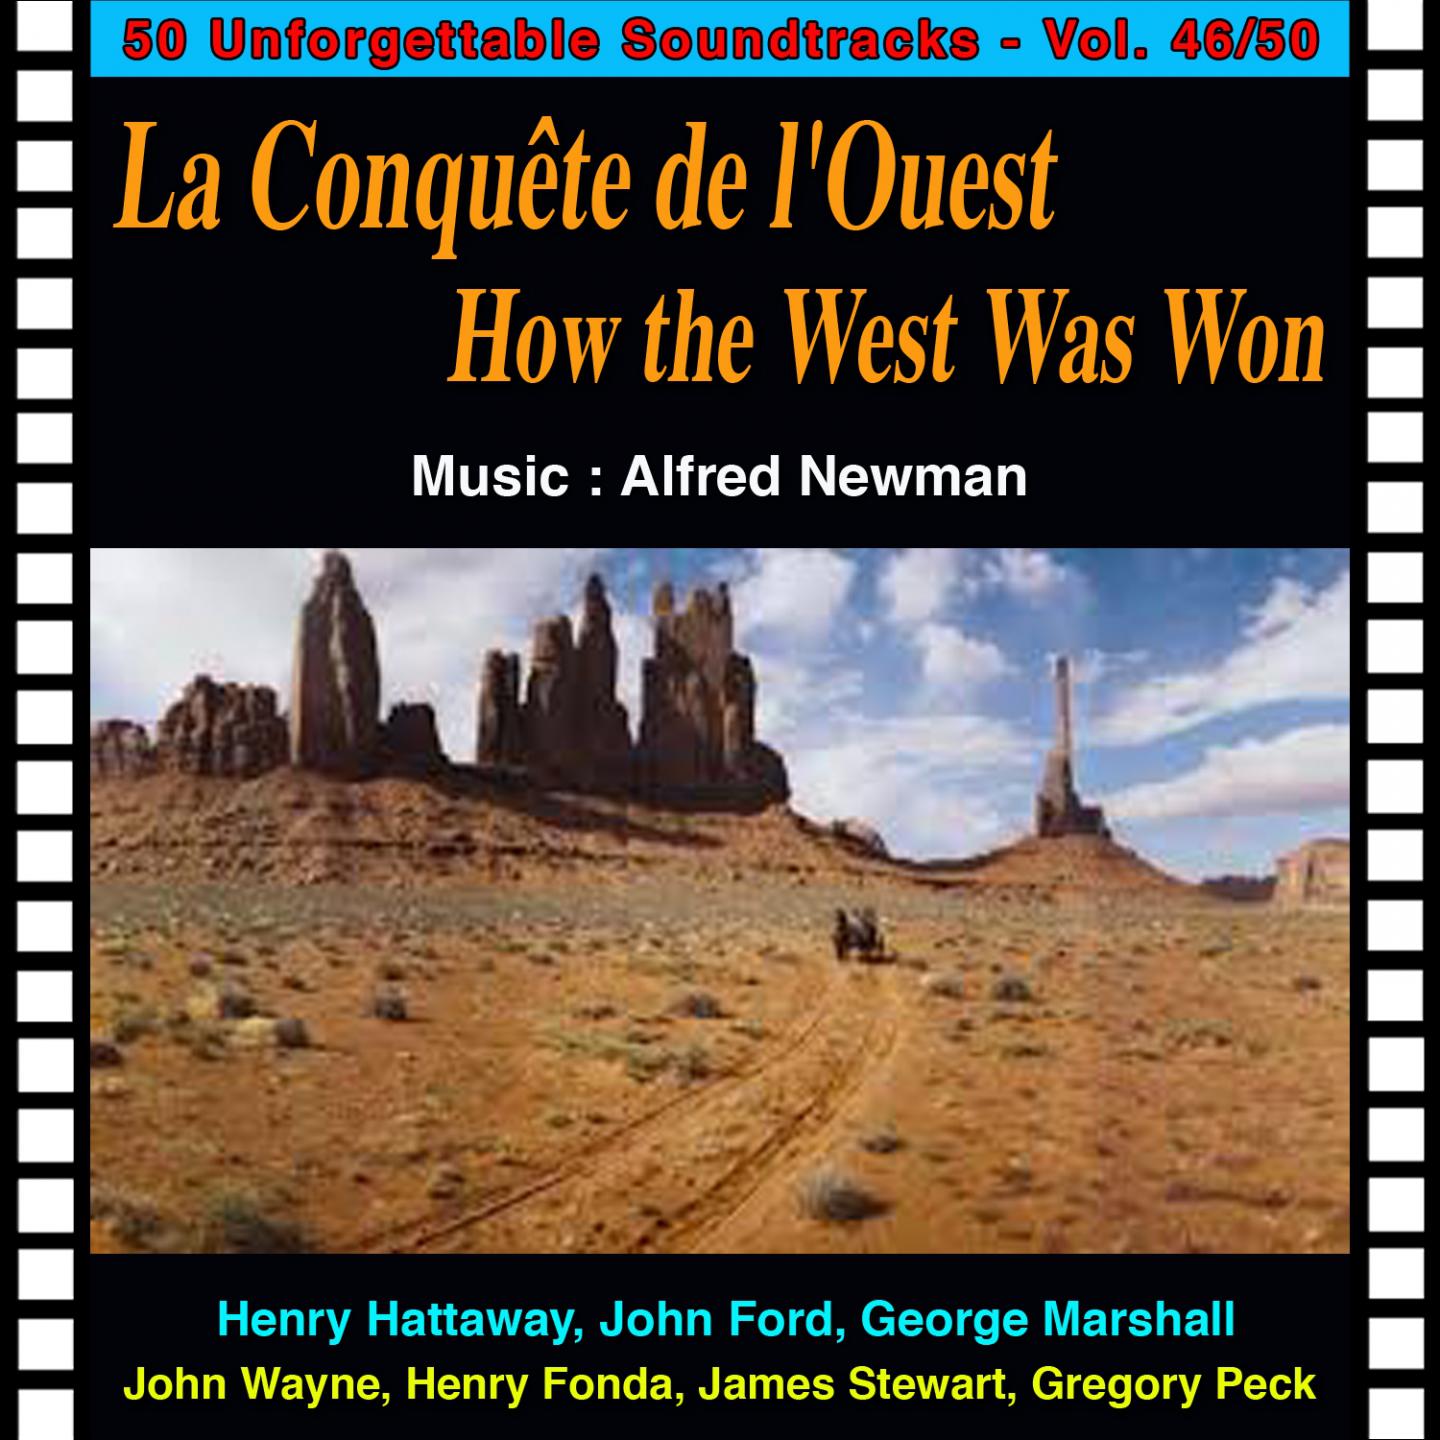 No Goodbye La Conqu te De L' ouest  How the West Was Won